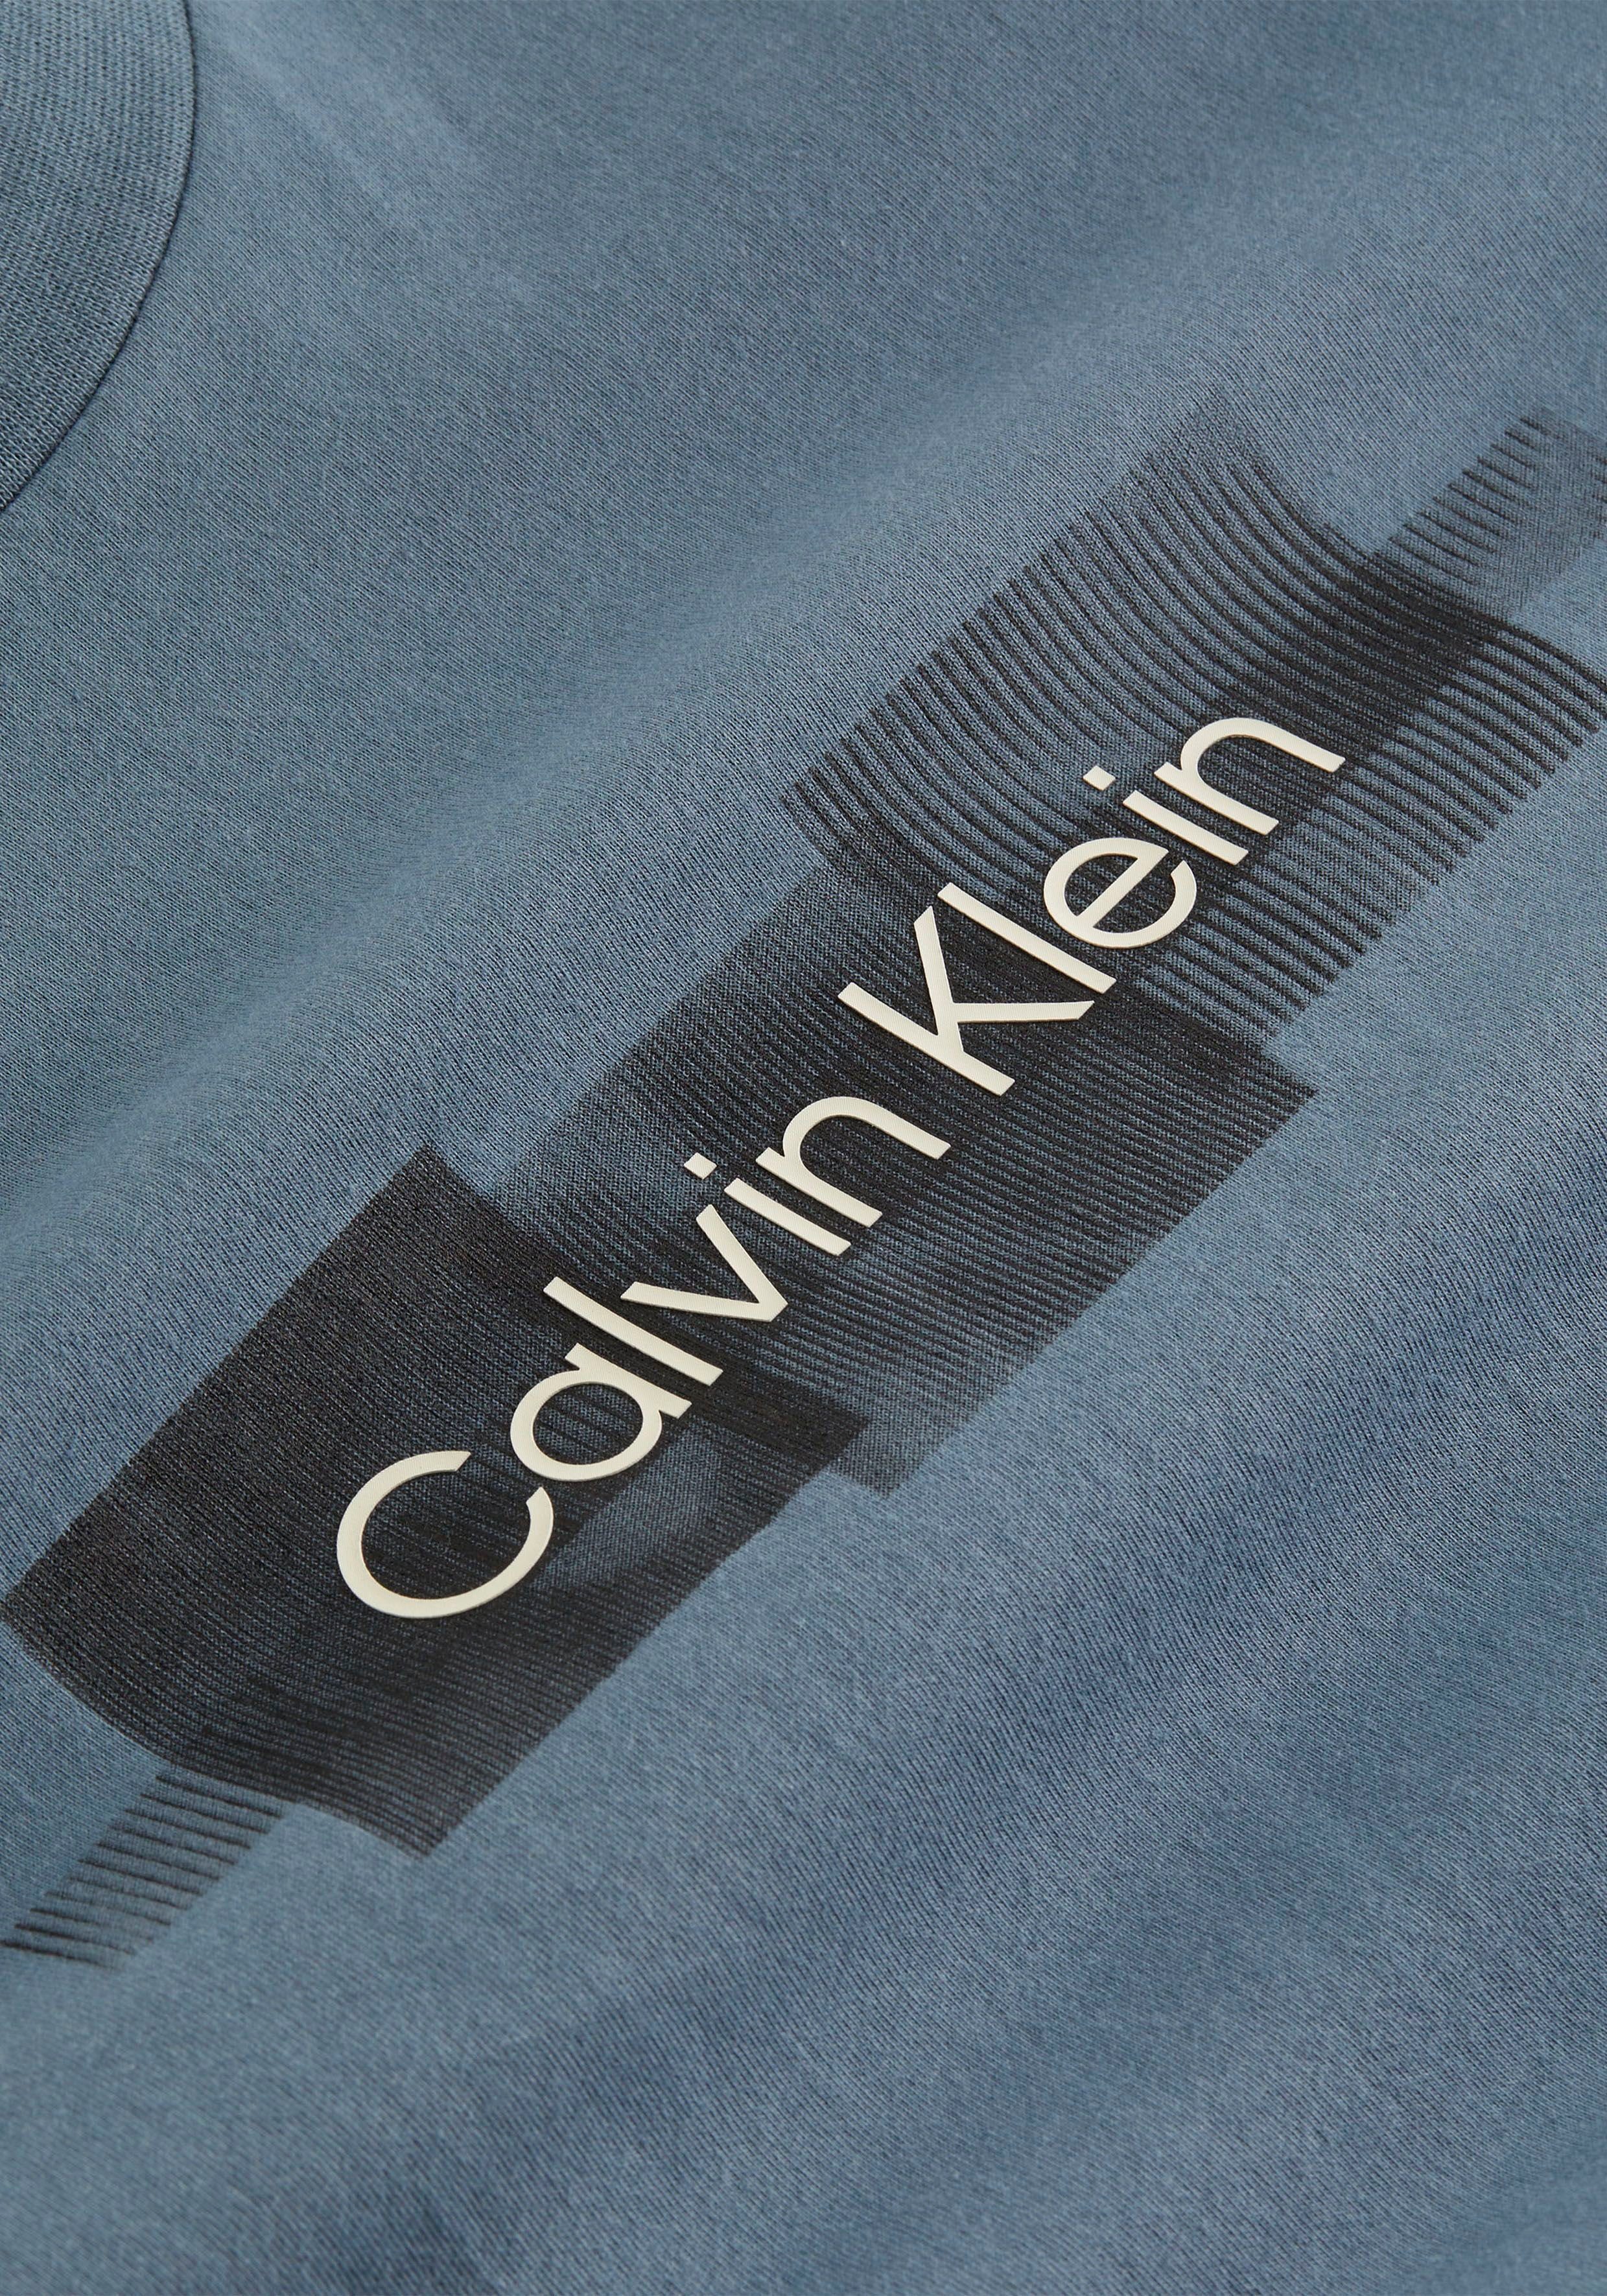 reiner BOX Tar aus LOGO STRIPED Klein T-Shirt T-SHIRT Grey Baumwolle Calvin